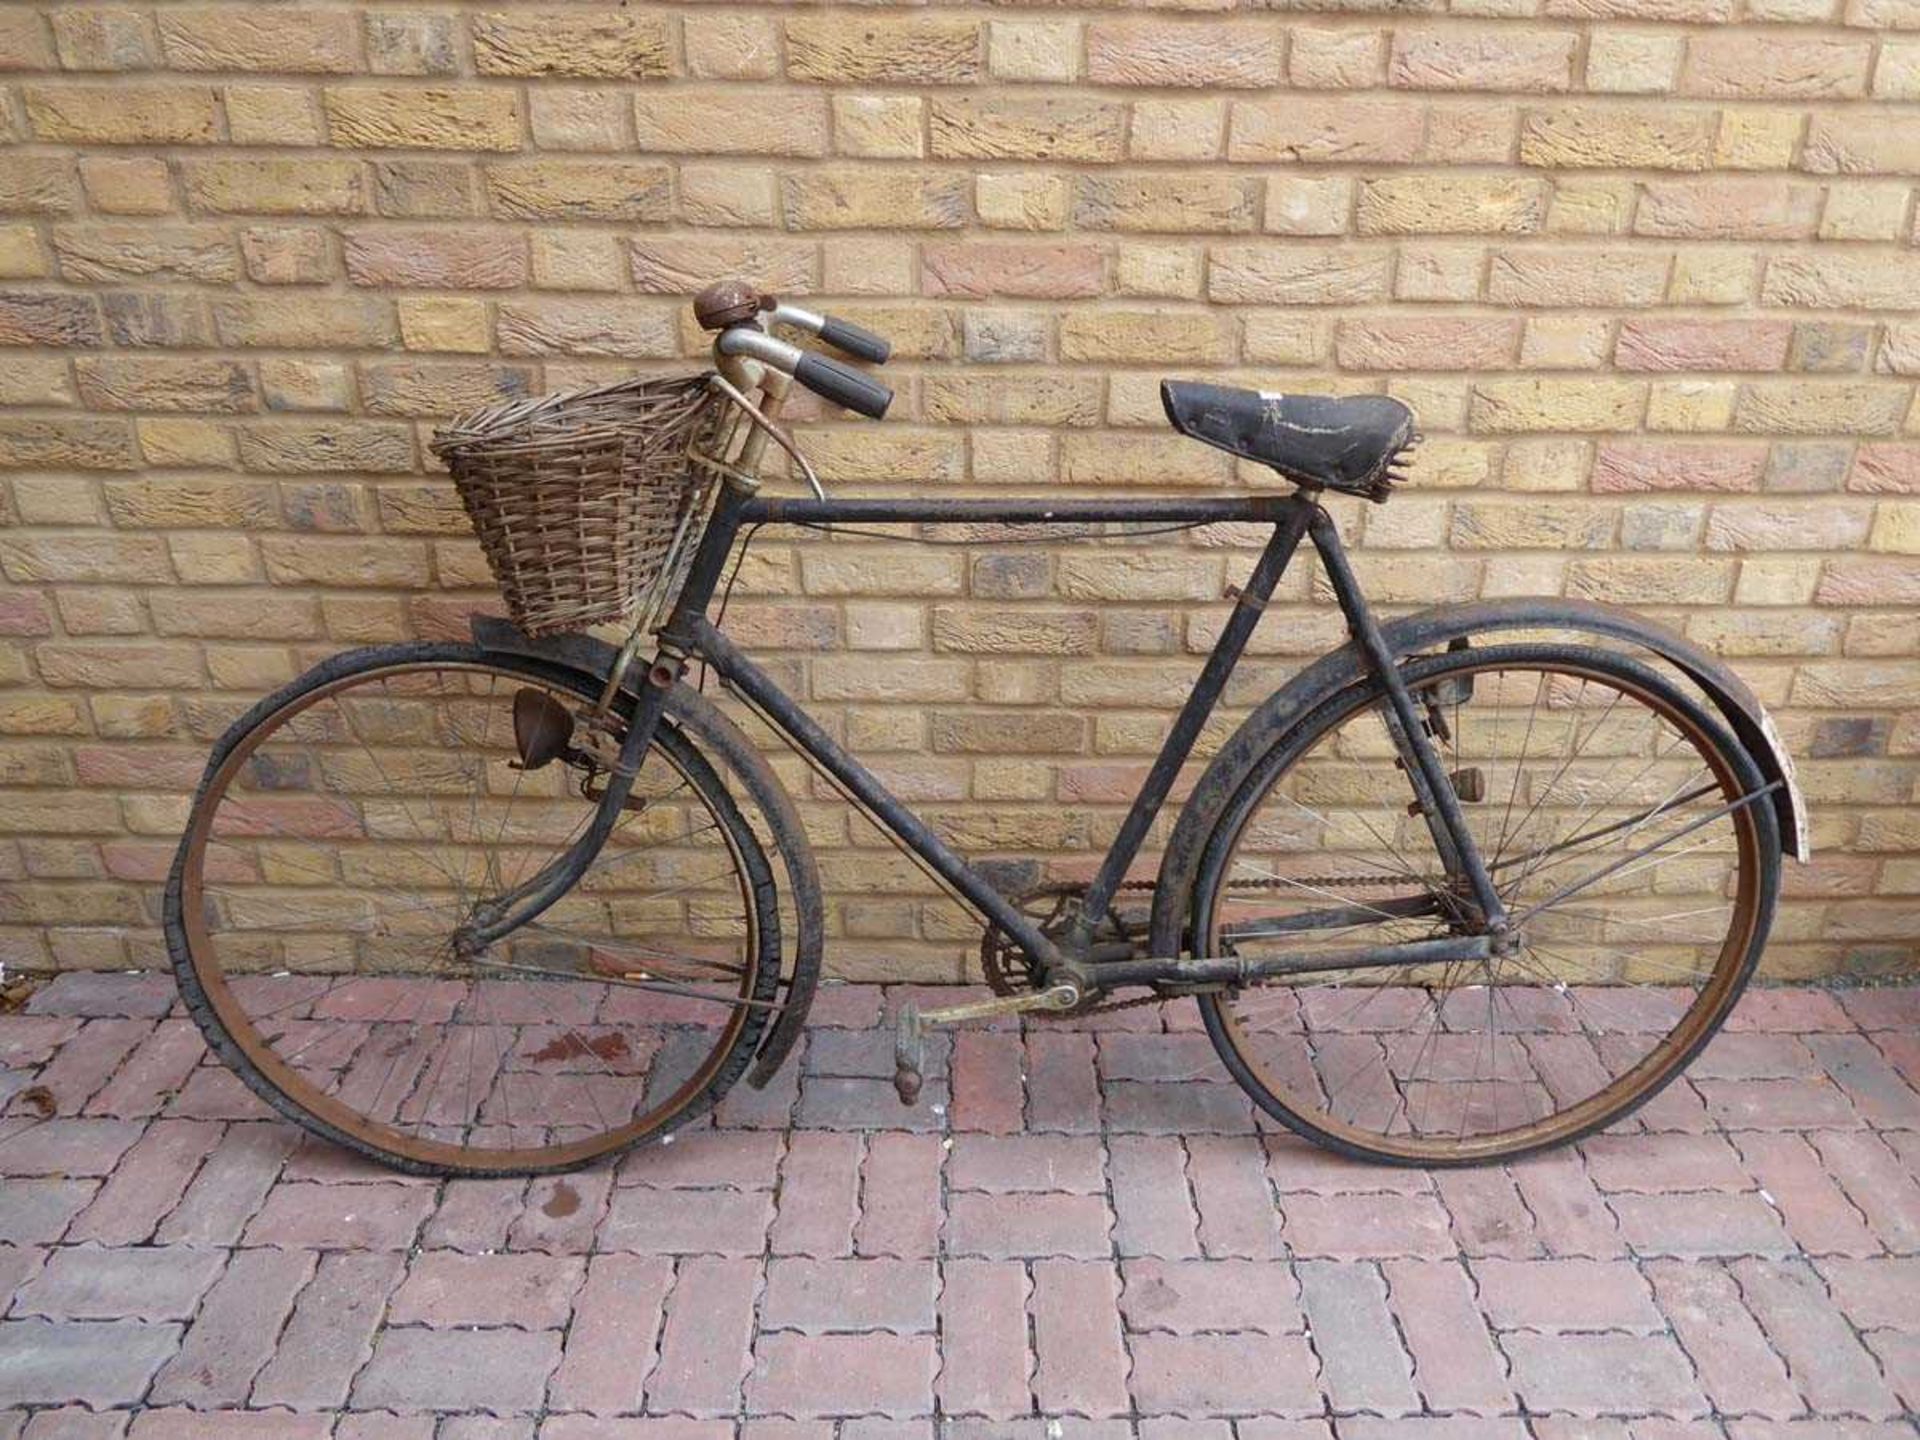 Vintage gents black bike with basket